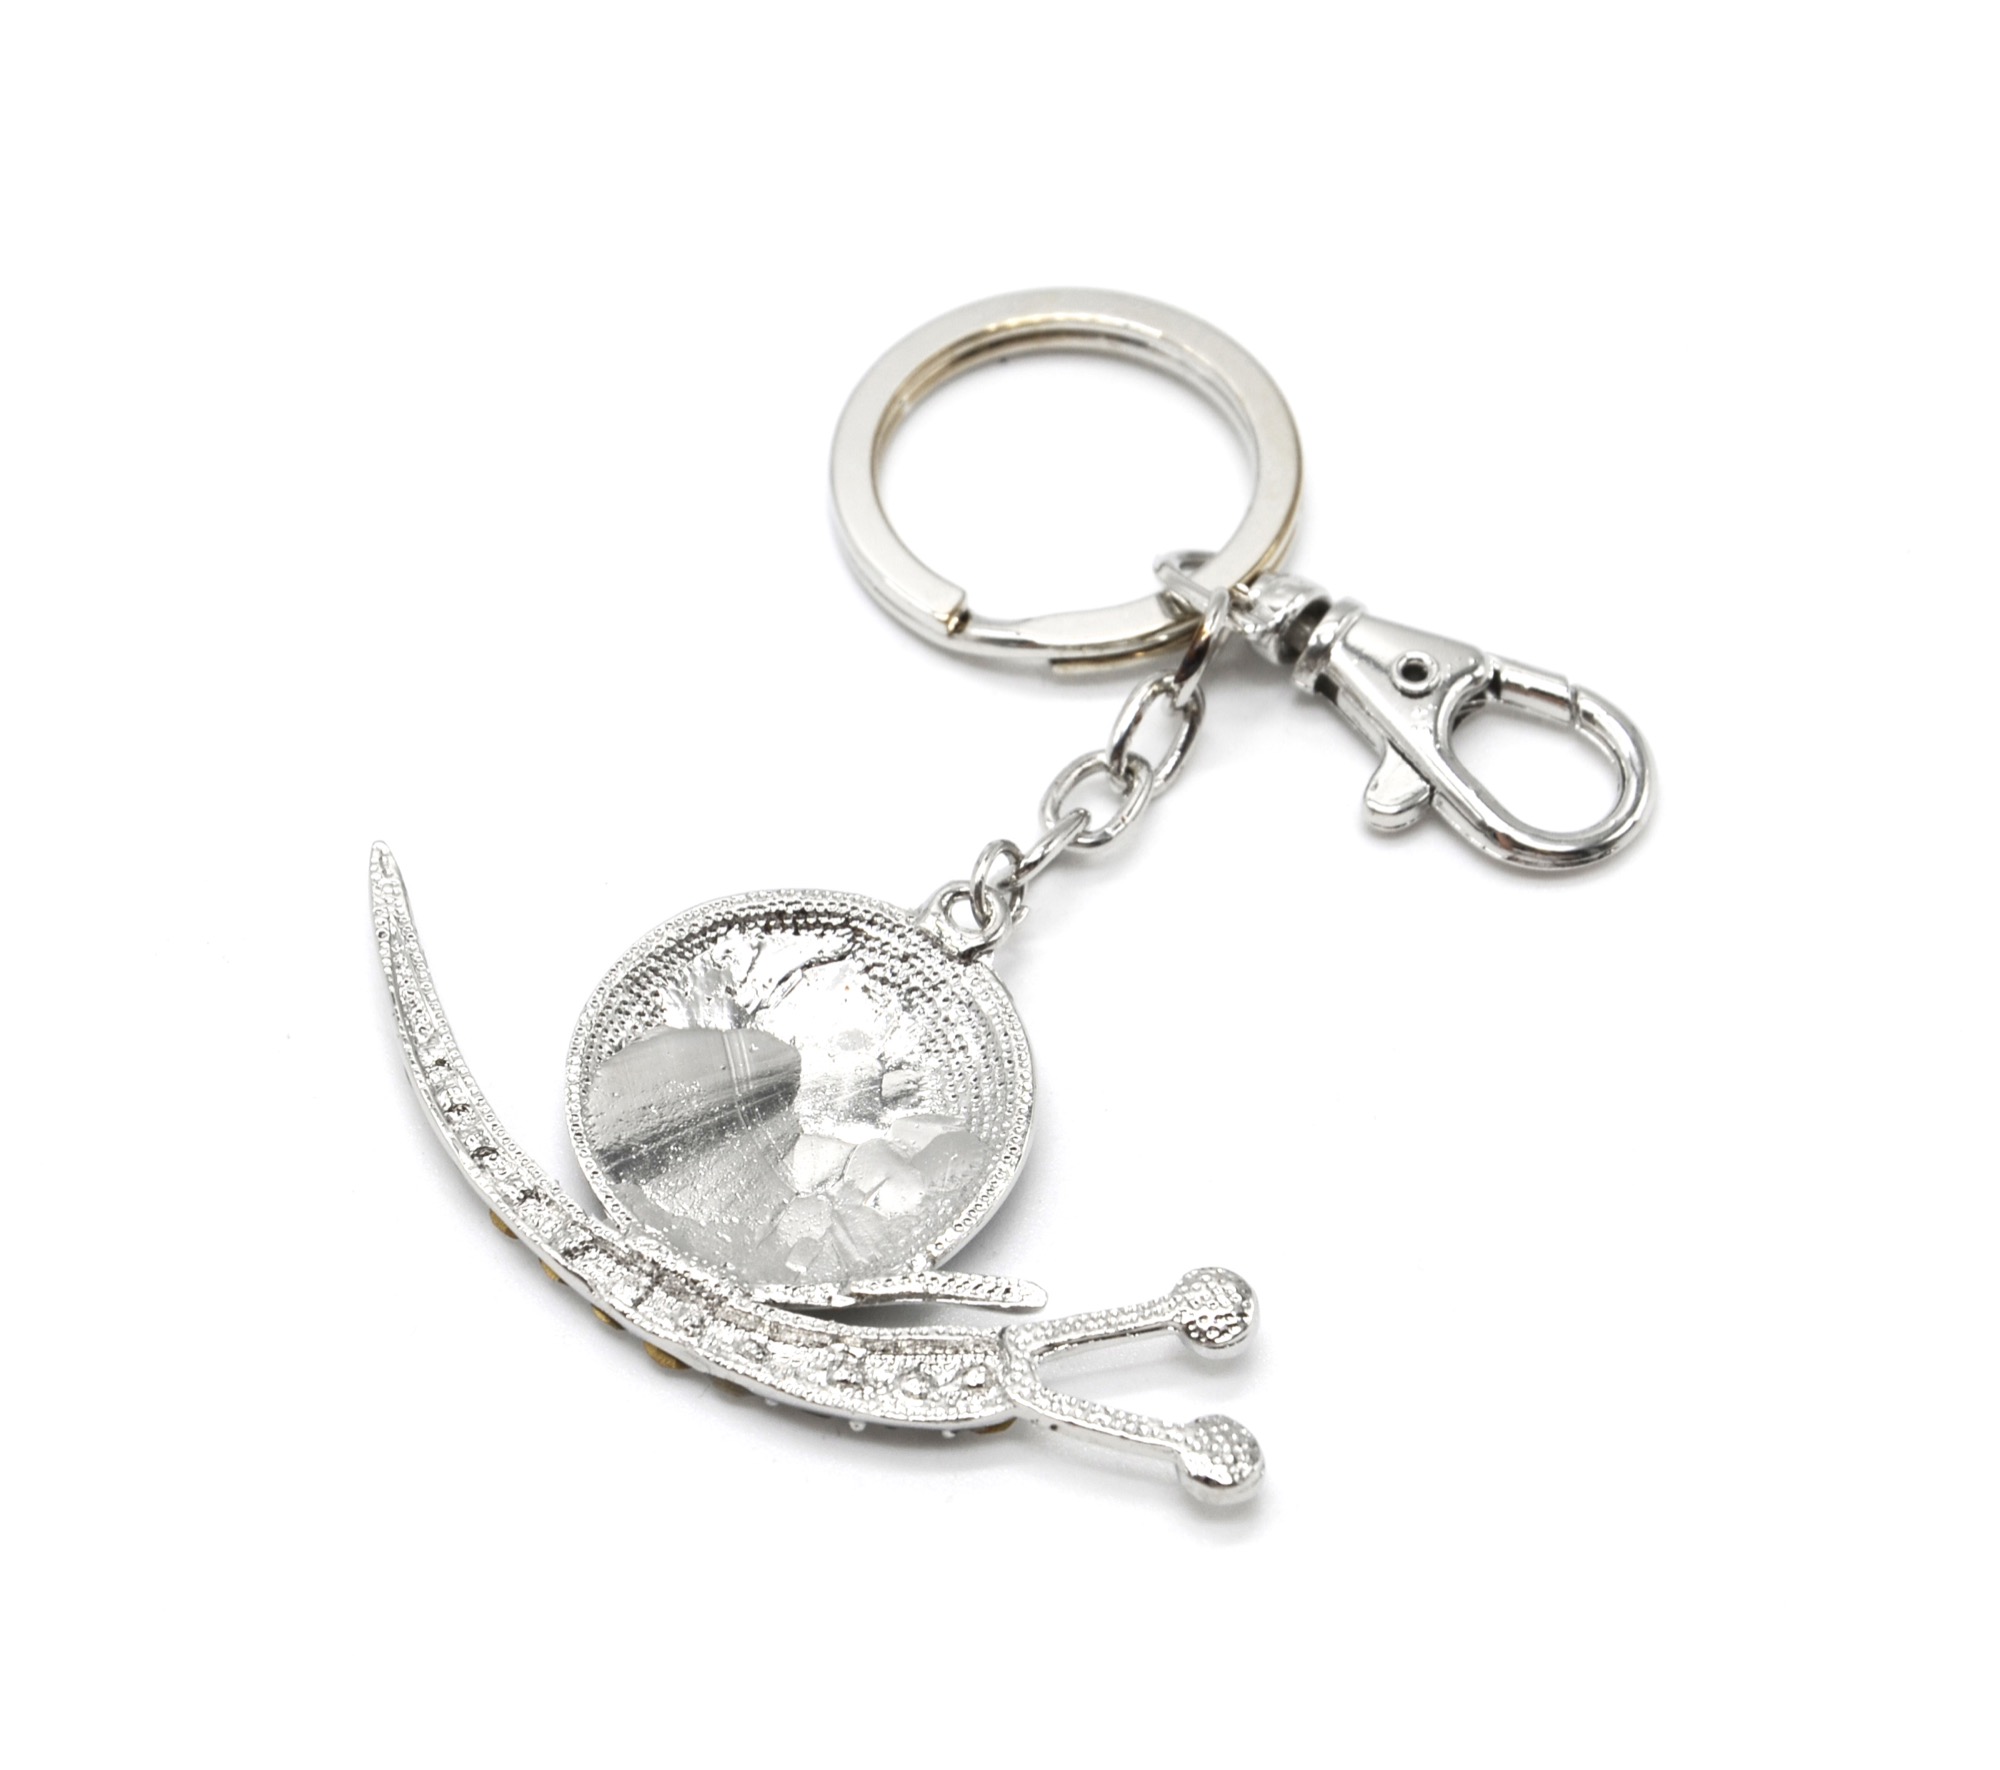 Porte-clés - anneau + mousqueton - 3.5cm de longueur, en métal argenté